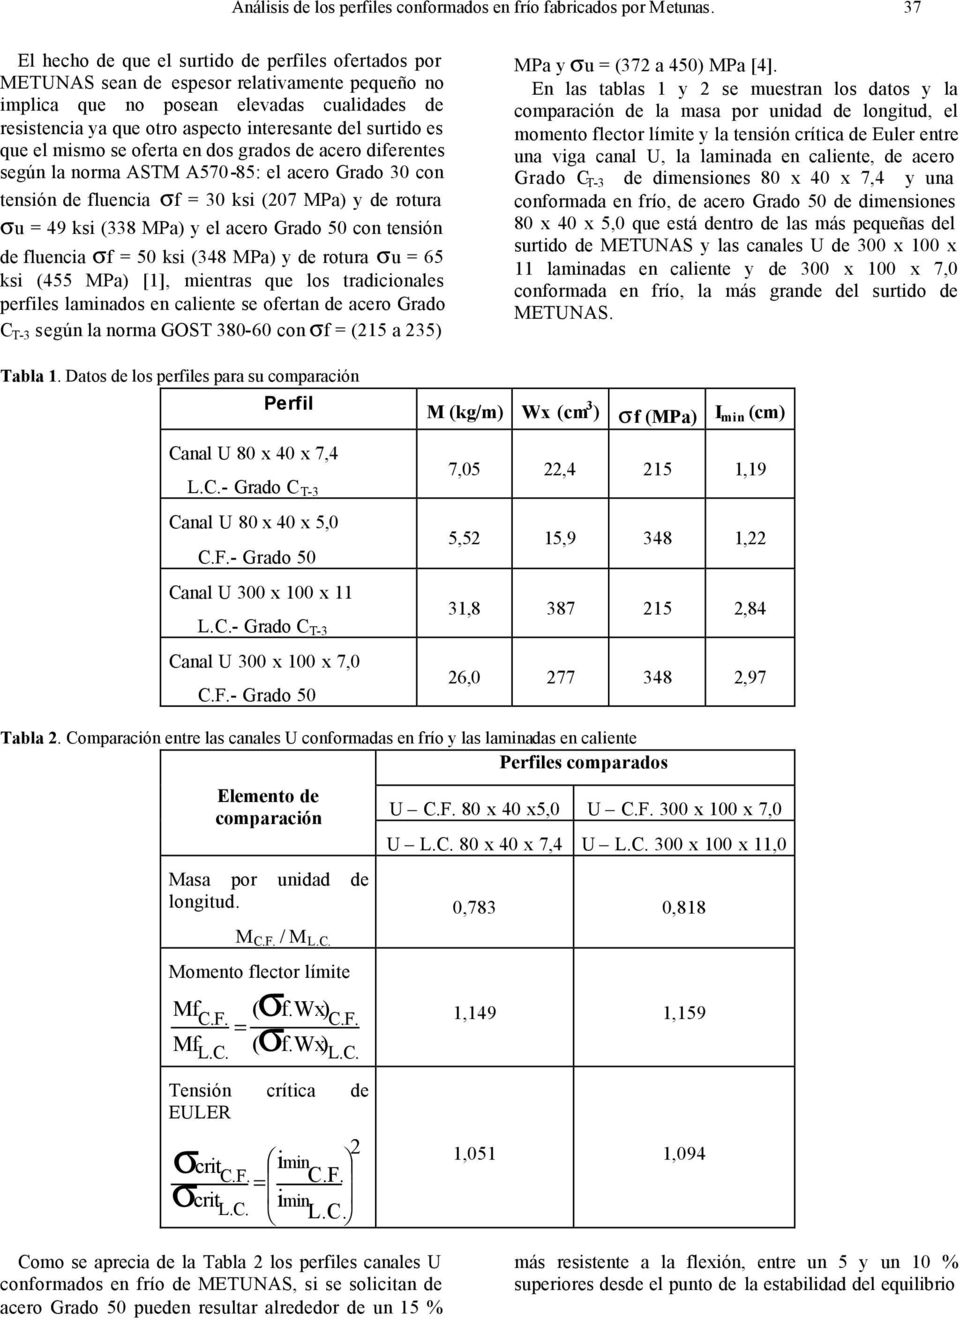 surtido es que el mismo se oferta en dos grados de acero diferentes según la norma ASTM A570-85: el acero Grado 30 con tensión de fluencia σf = 30 ksi (07 MPa) de rotura σu = 49 ksi (338 MPa) el